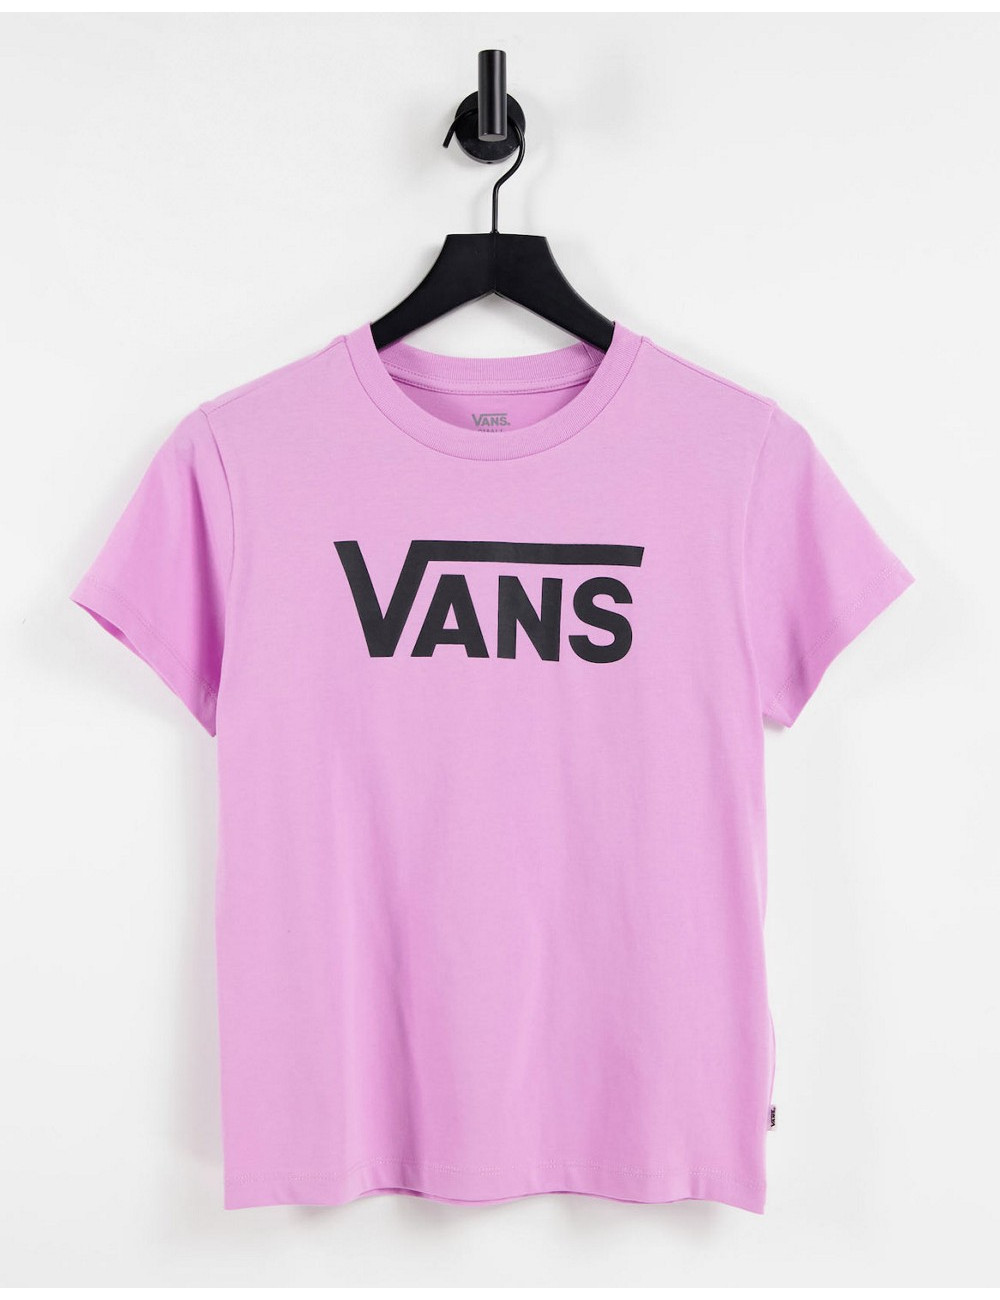 Vans Flying V logo t-shirt...